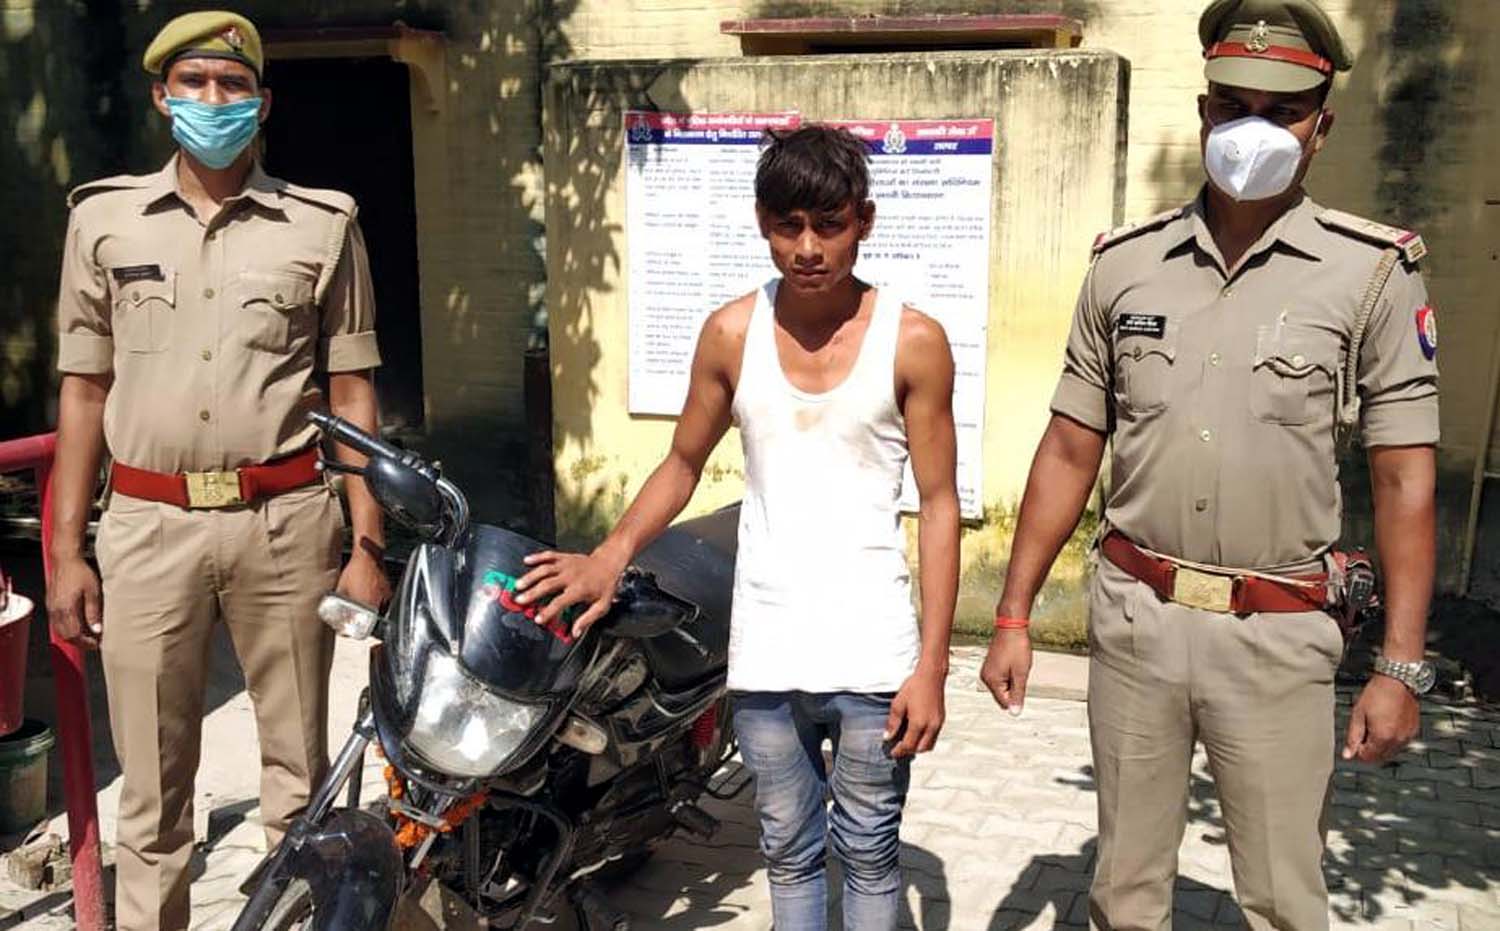 चोरी की बाइक संग युवक गिरफ्तार | #TEJASTODAY डोभी, जौनपुर। स्थानीय थाना क्षेत्र के कोपा पतरही रेलवे क्रासिंग के पास से एक युवक को चोरी की मोटरसाइकिल के साथ पुलिस ने गिरफ्तार कर लिया। प्राप्त जानकरी के अनुसार चन्दवक पुलिस को सूचना मिली कि एक संदिग्ध युवक चोरी की मोटरसाइकिल के साथ कोपा क्षेत्र में घूम रहा है। इसको संज्ञान में लेते हुए थानाध्यक्ष दिग्विजय सिंह ने संदिग्ध को पतरहीं रेलवे क्रासिंग के पास से धर दबोचा। छानबीन करने पर युवक ने अपना नाम अजय यादव उर्फ बीरू निवासी नरकटाफोक थाना चन्दवक बताया। उसके पास से बिना नंबर प्लेट की चोरी की मोटरसाइकिल जिसका चेचिस नंबर गला दिया गया था, बरामद हुआ।